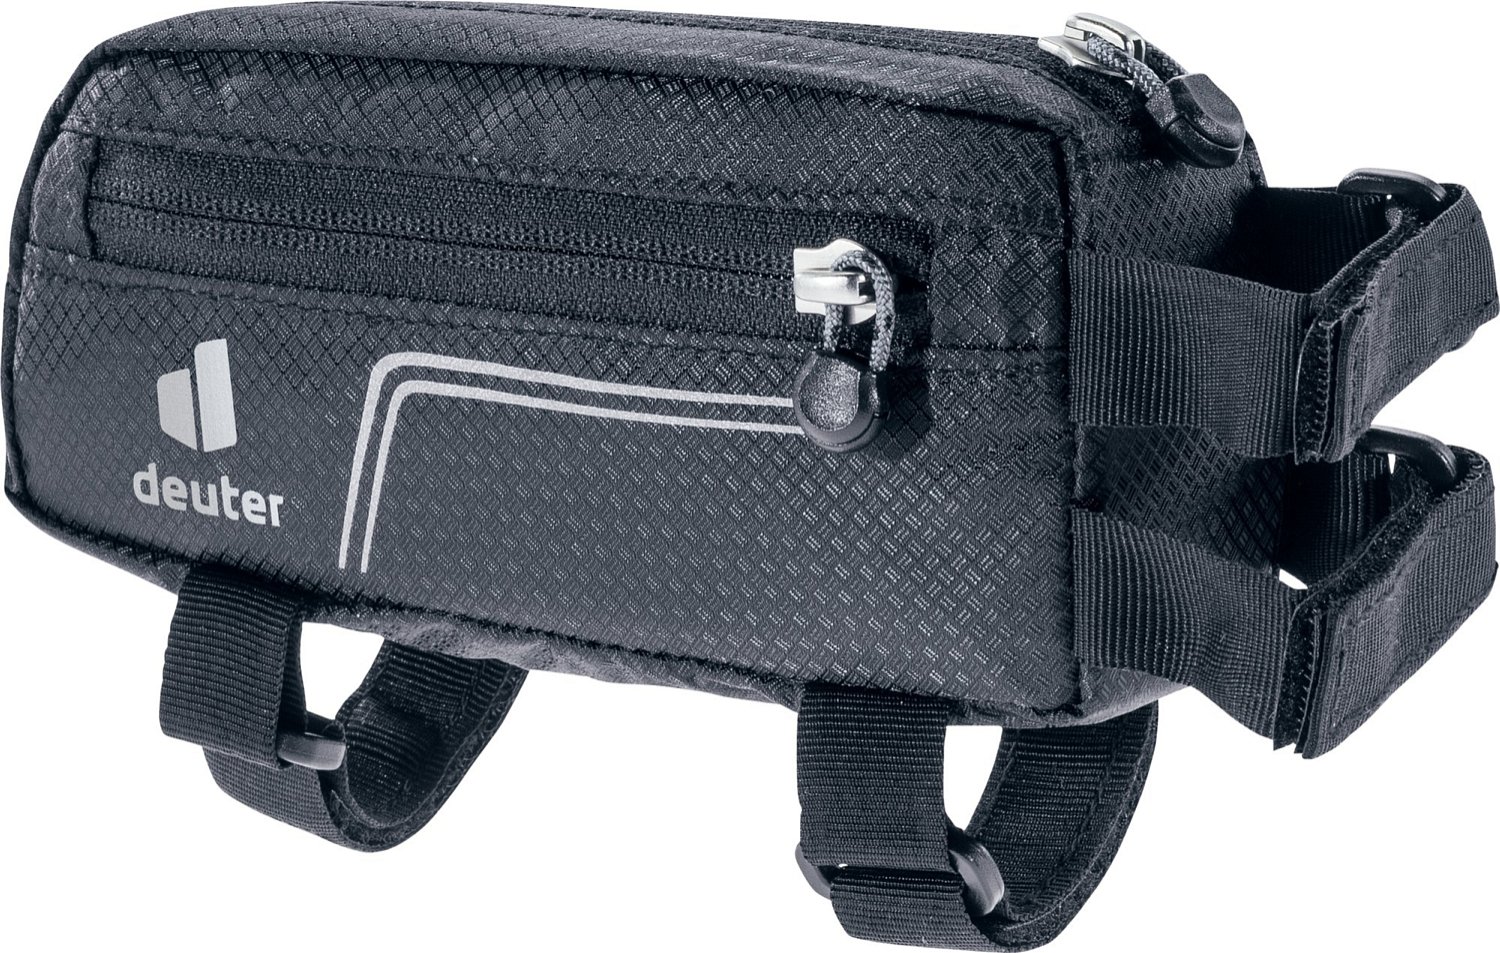 Велосумка Deuter Energy Bag, 0.5 л, на раму, Black, 2021, 3290221_7000 сумка велосипедная syncros frame retro на раму black 264525